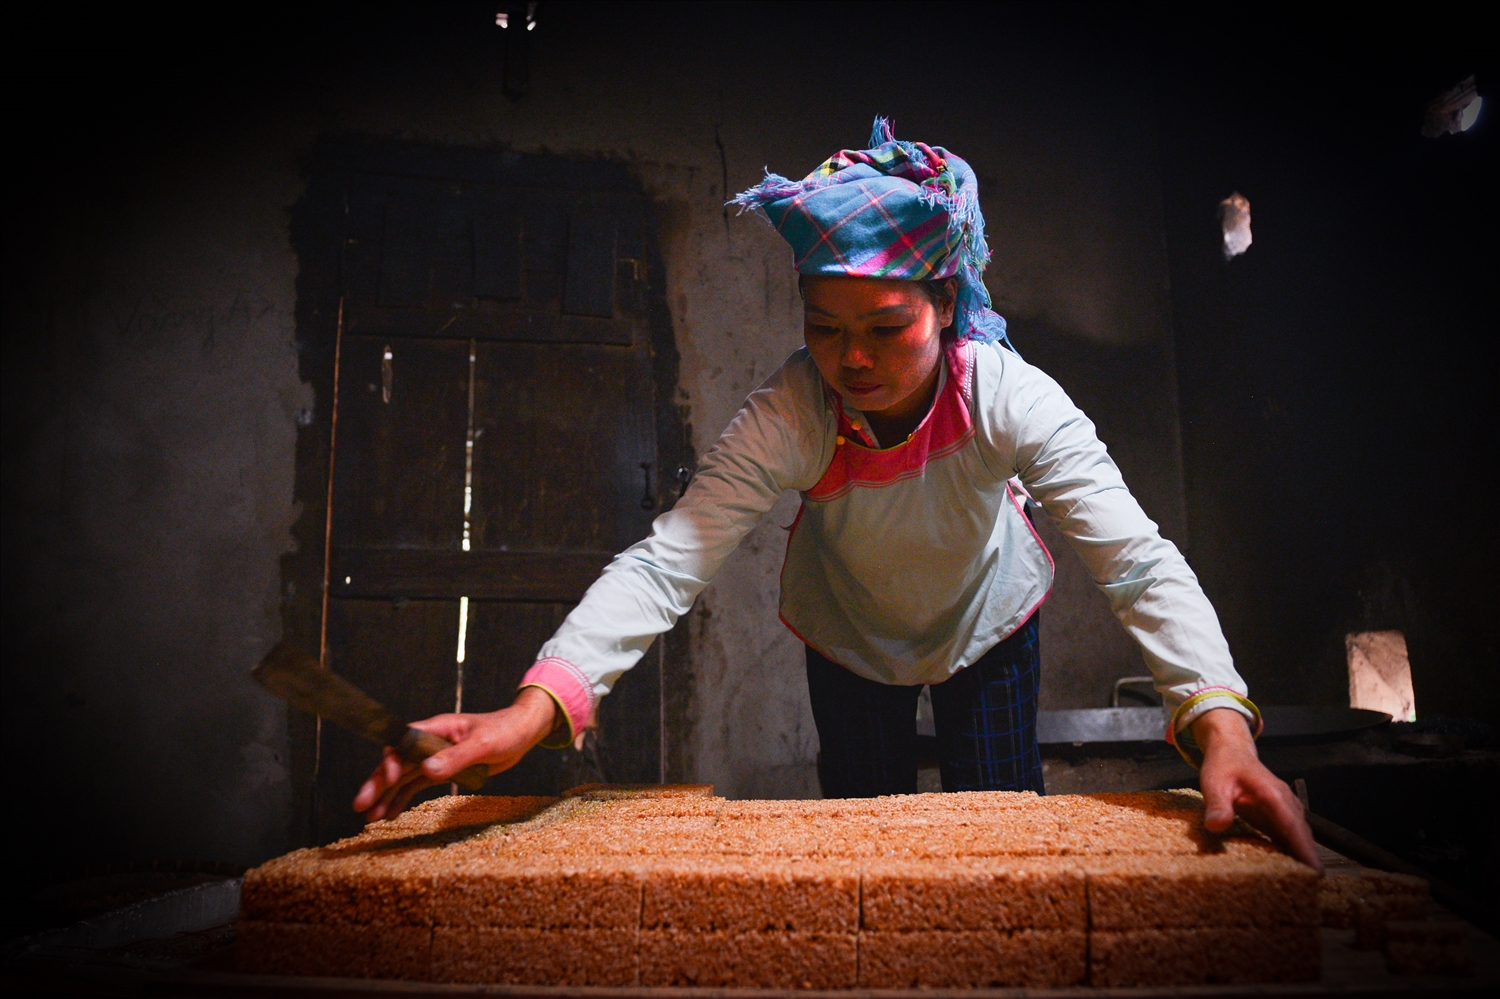 Bánh bỏng được người Giáy Lai Châu được làm hoàn toàn theo phương pháp thủ công, không sử dụng bất kỳ một thiết bị máy móc nào. Do vậy, mỗi công đoạn từ khâu sàng đãi, rang gạo, làm đường dẻo… đến đóng khuôn, gói bánh đều được thực hiện rất cẩn thận và tỉ mỉ.